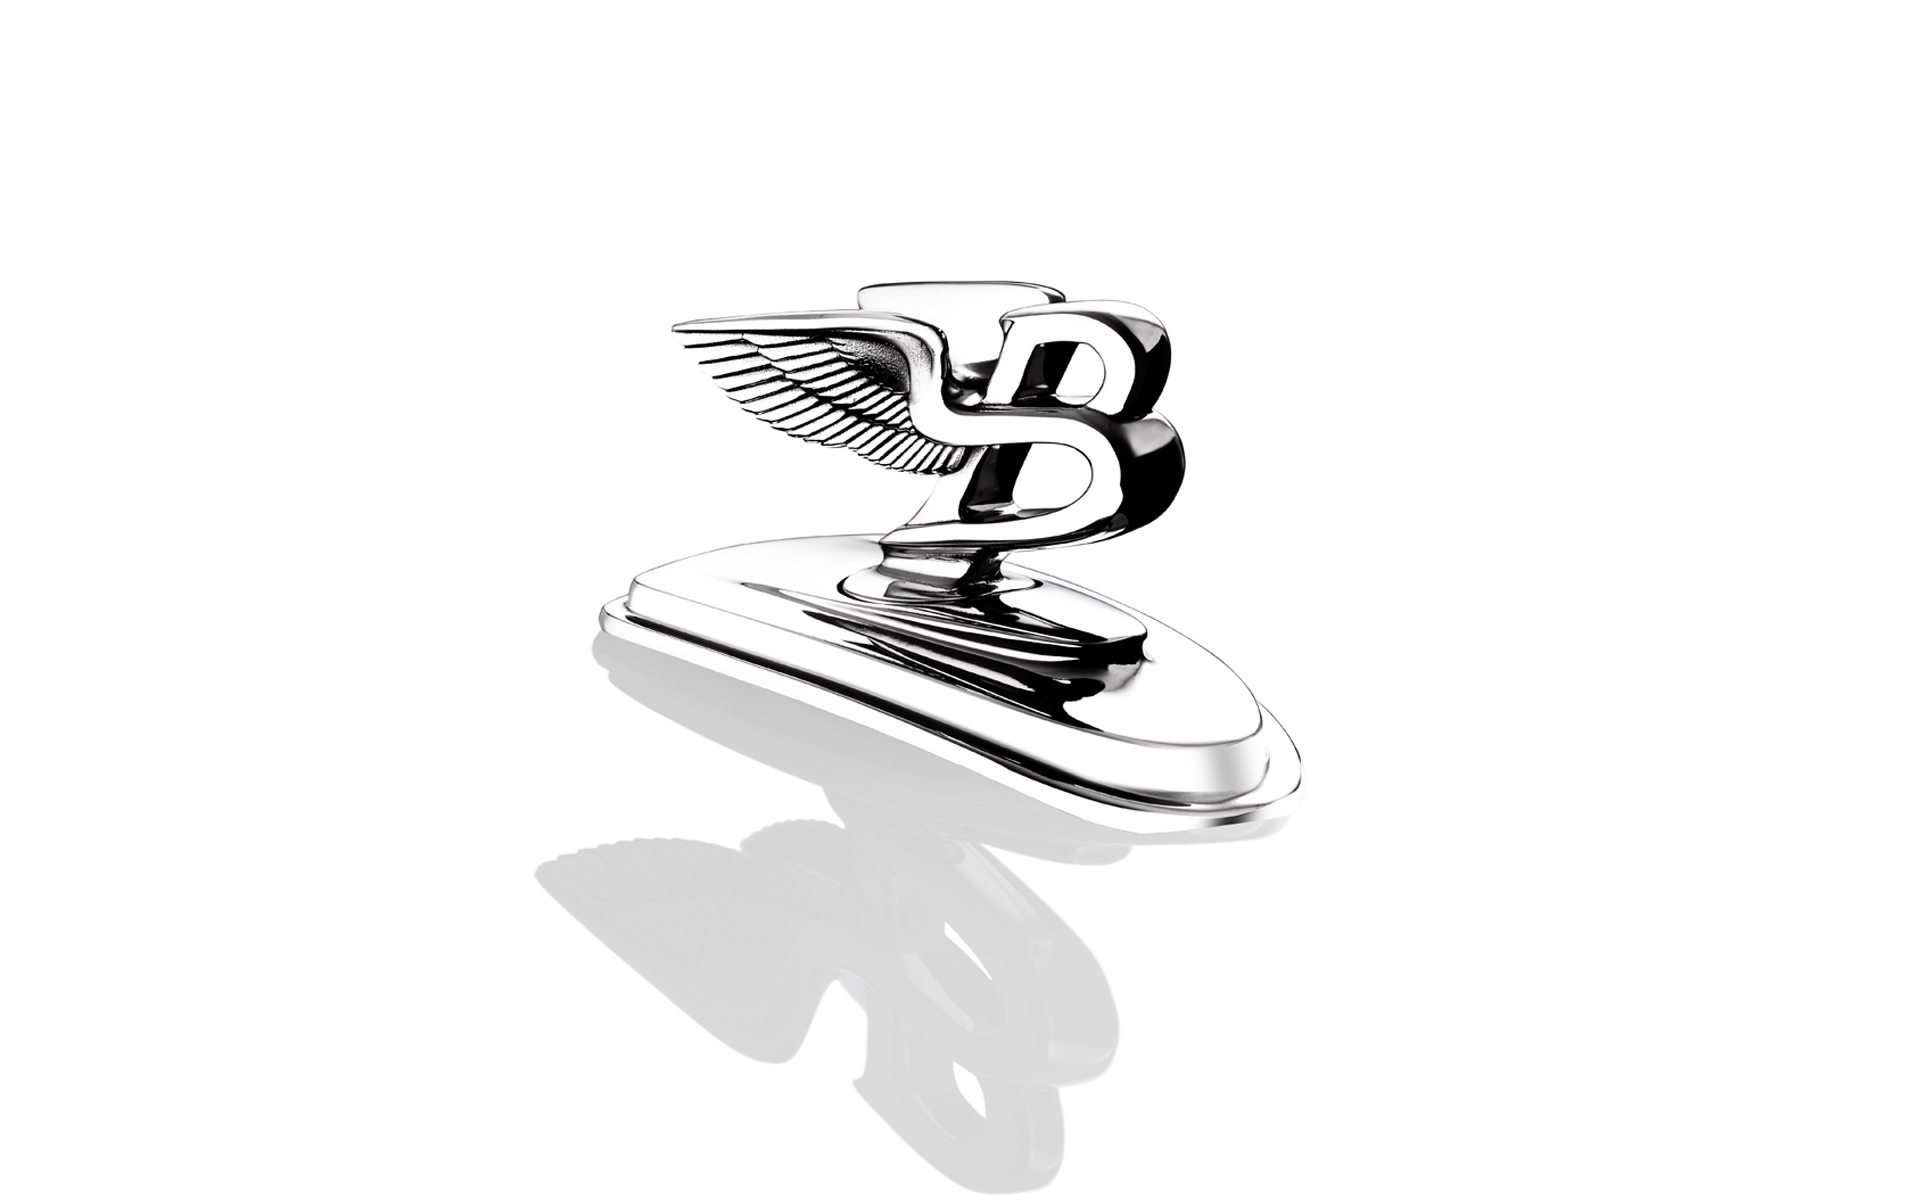 Bentley Logo Wallpapers